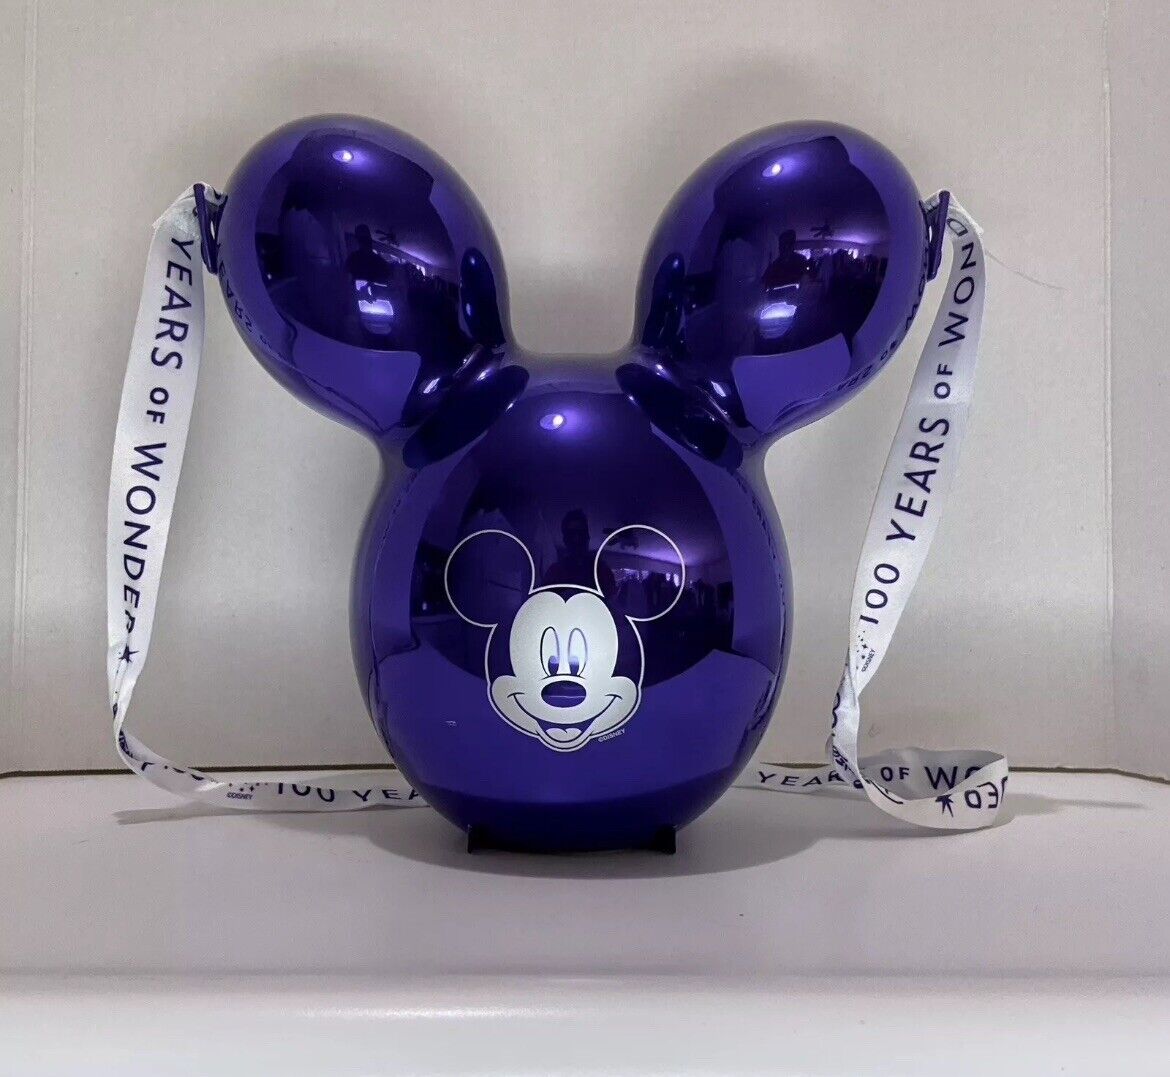 Disney Parks 100 Years of Wonder Metallic Purple Mickey Balloon Popcorn Bucket